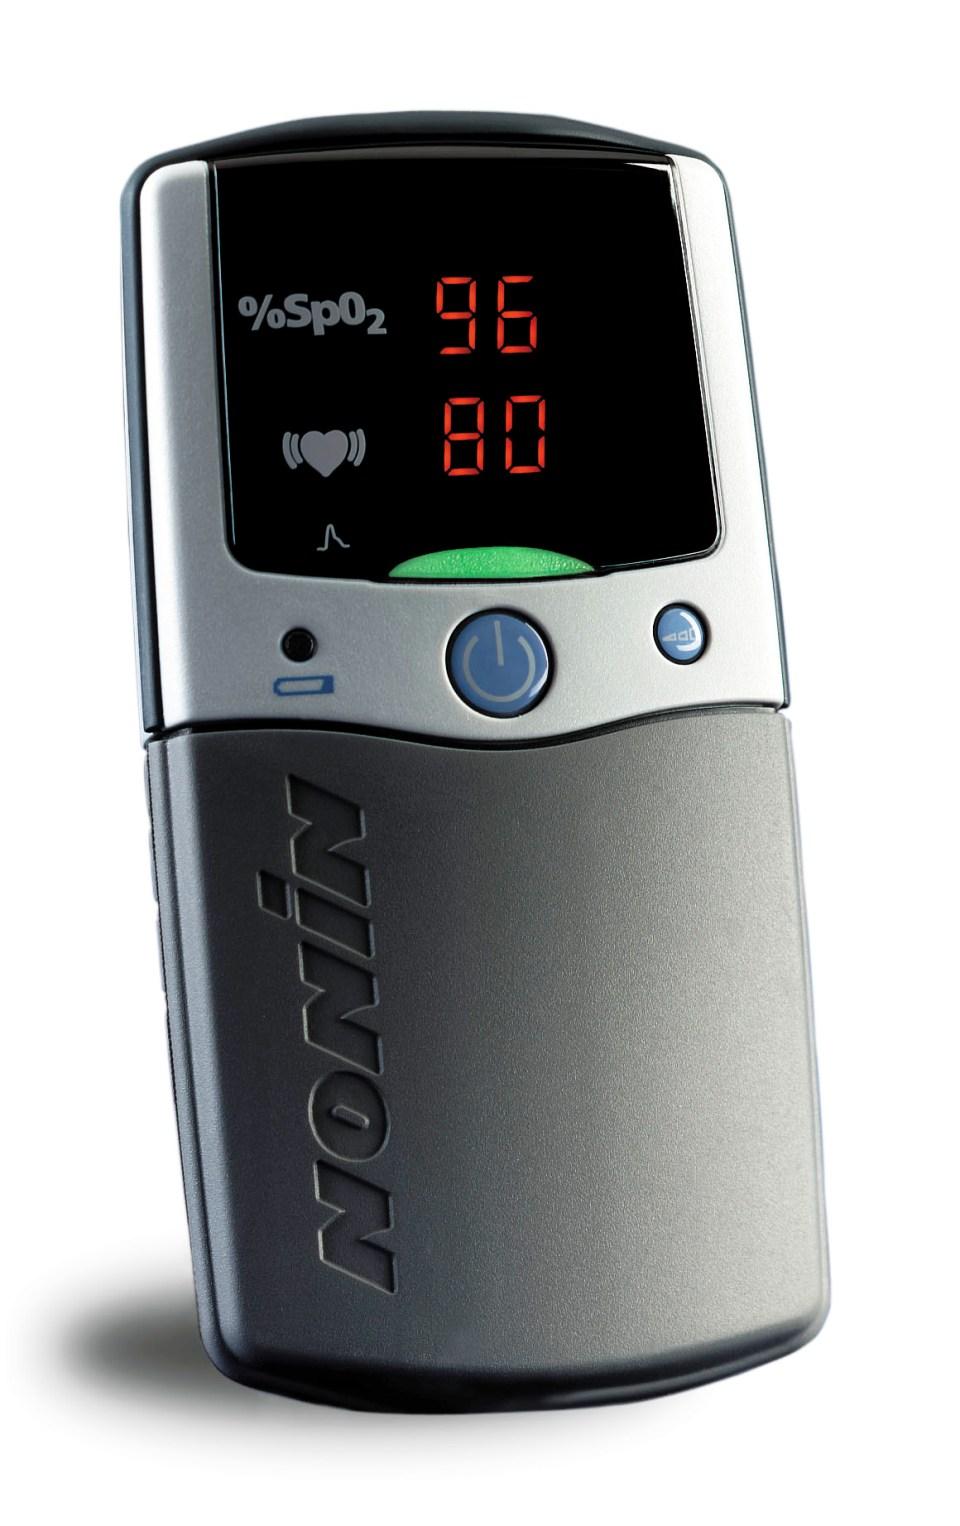 2500-16 pulsní oxymetry: 18) Ruční oxymetr PalmSat s alarmy